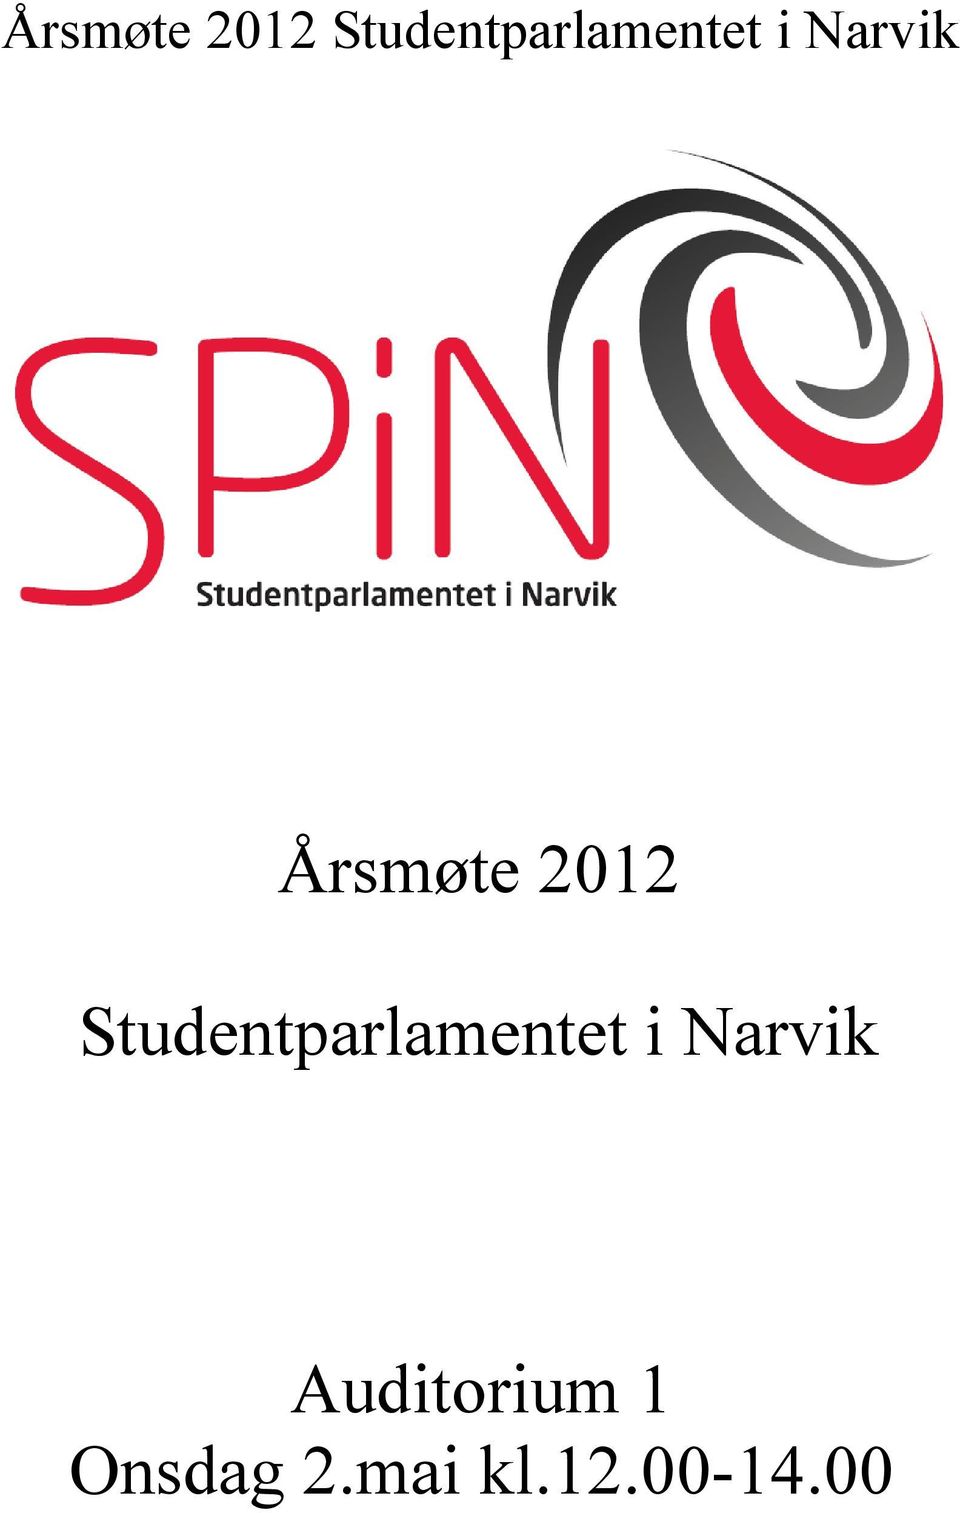 Narvik Auditorium 1